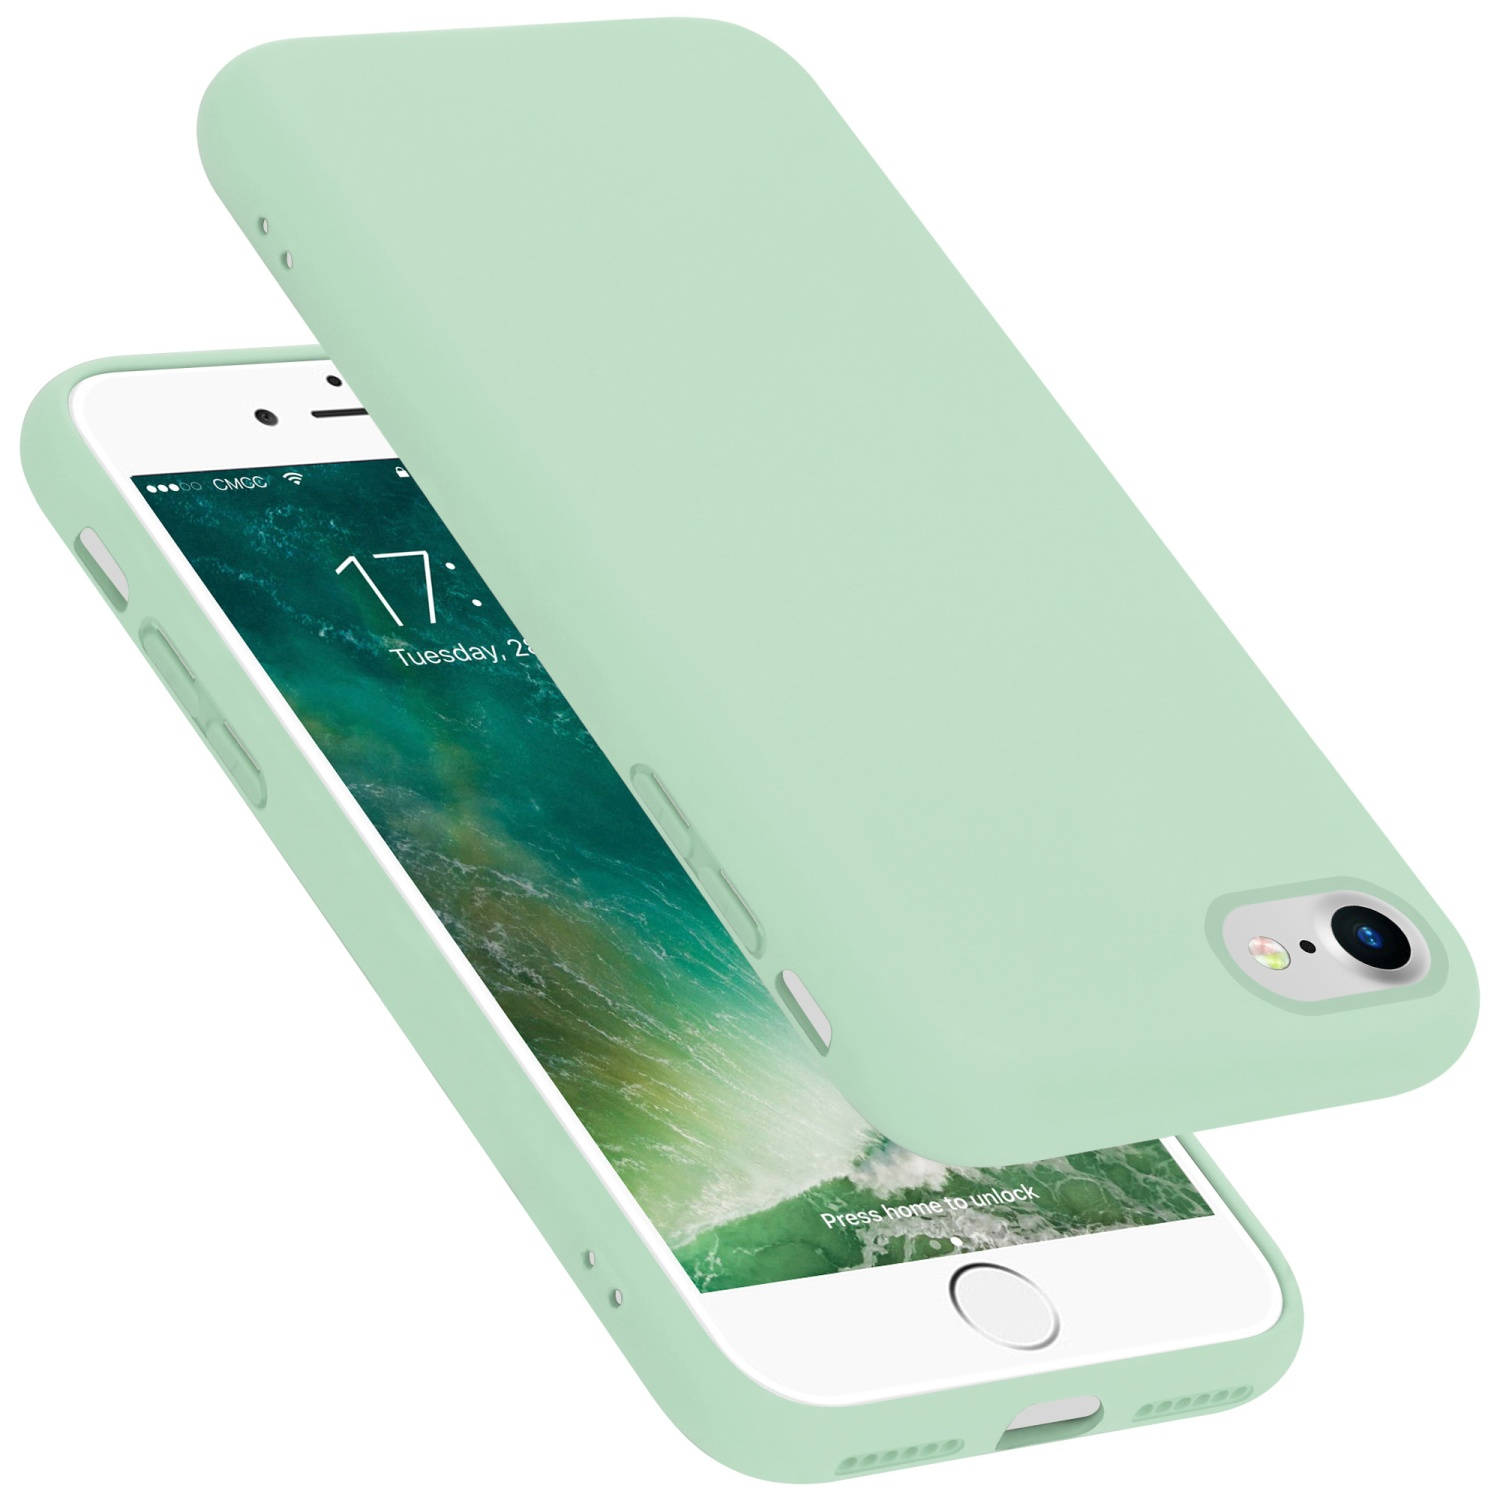 Cadorabo Hoesje voor Apple iPhone 7 / 7S / 8 / SE 2020 in LIQUID LICHT GROEN - Beschermhoes gemaakt van flexibel TPU silicone